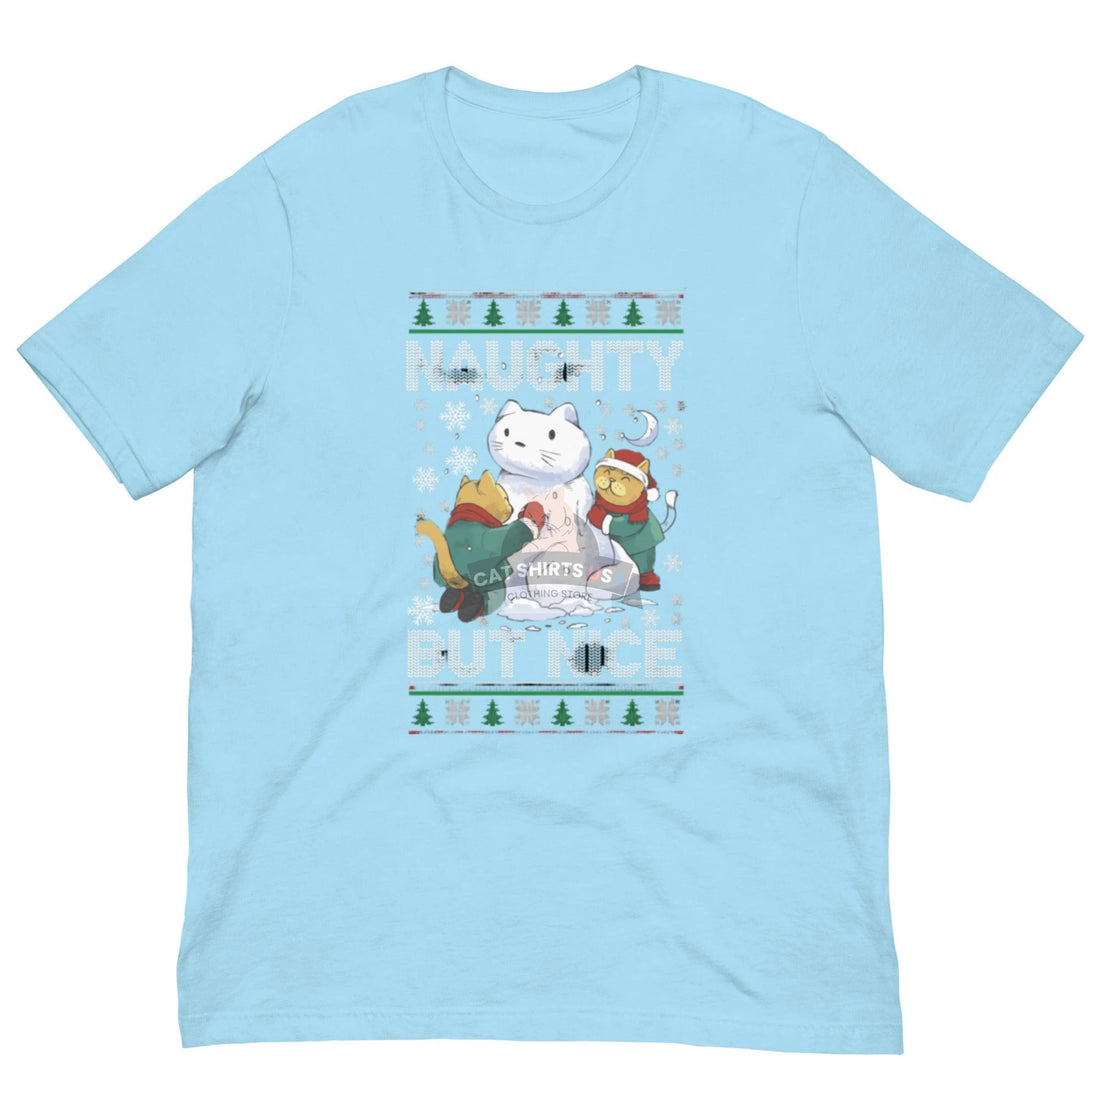 Naughty But Nice Cat Shirt - Cat Shirts USA